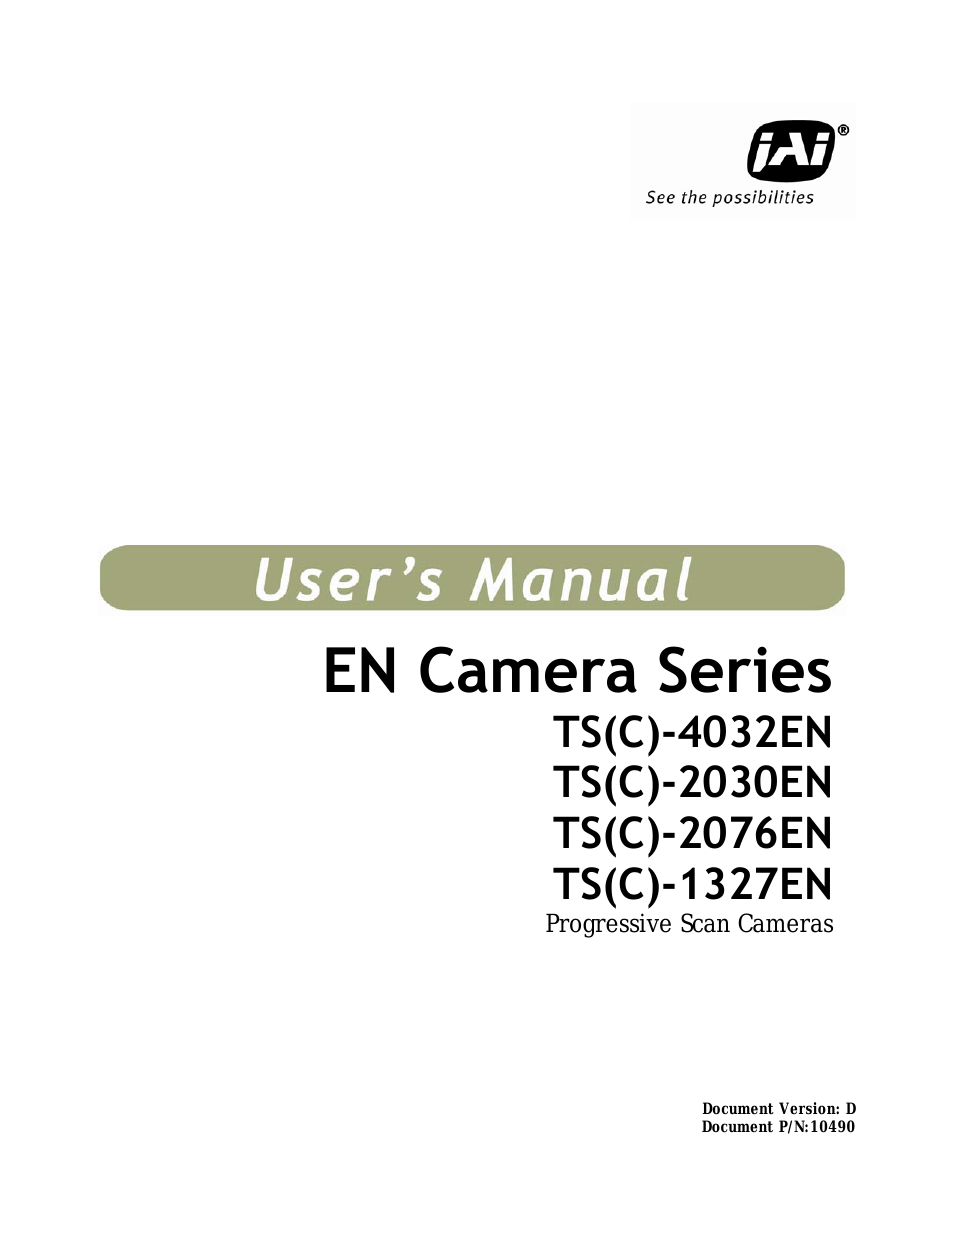 EN Series Cameras TS(C)-2076EN